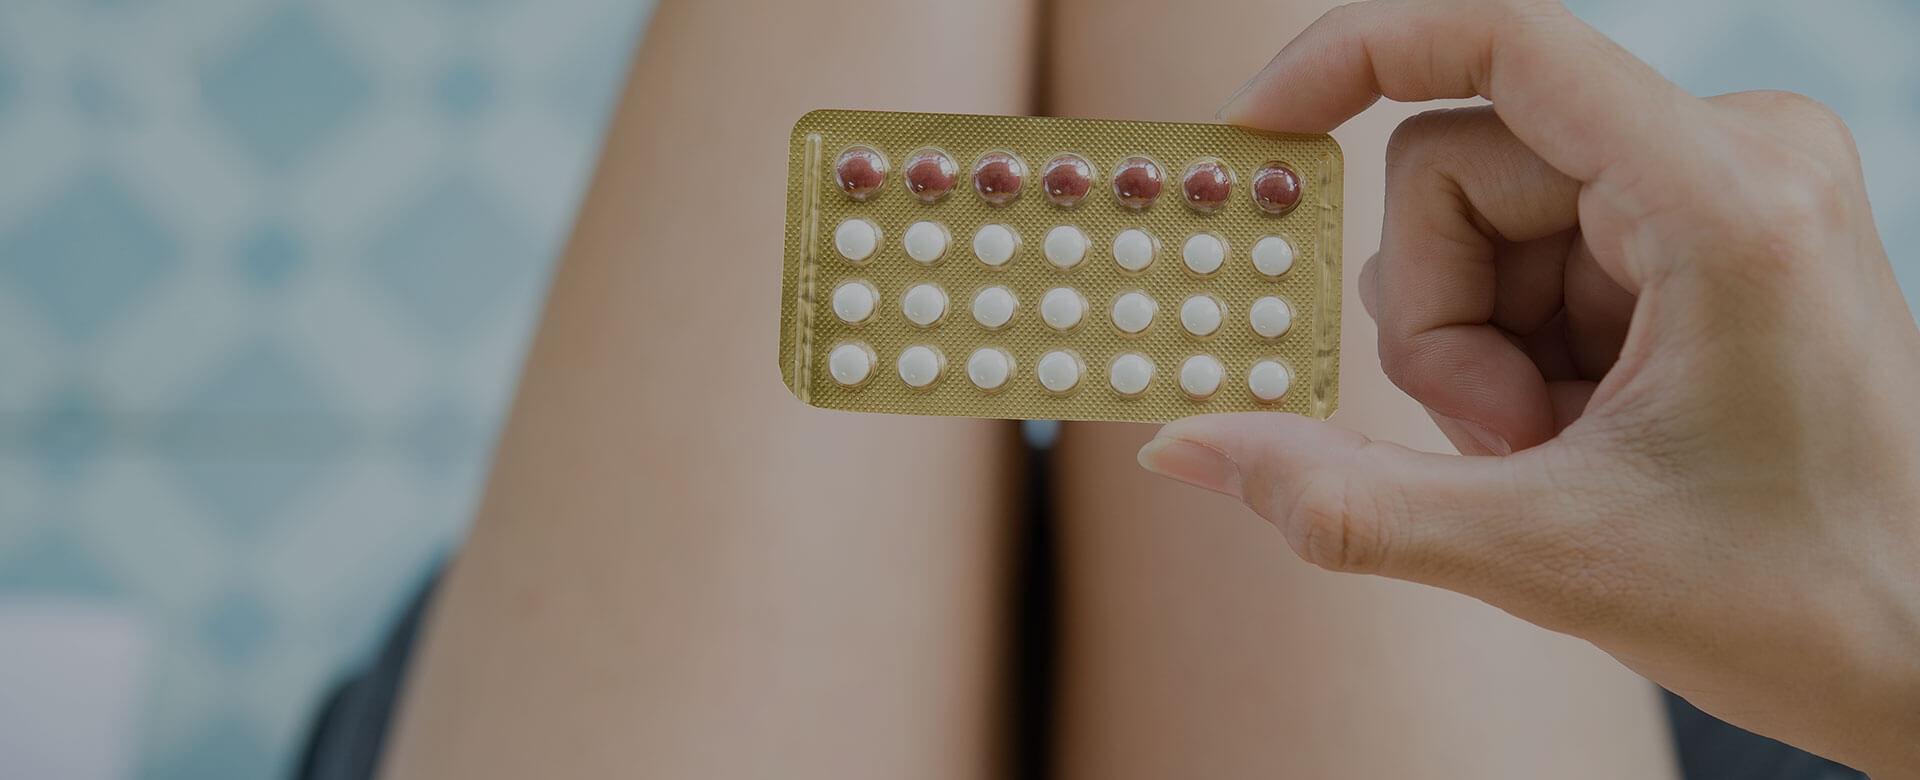 Tumore al seno: tutti i contraccettivi ormonali aumentano il rischio